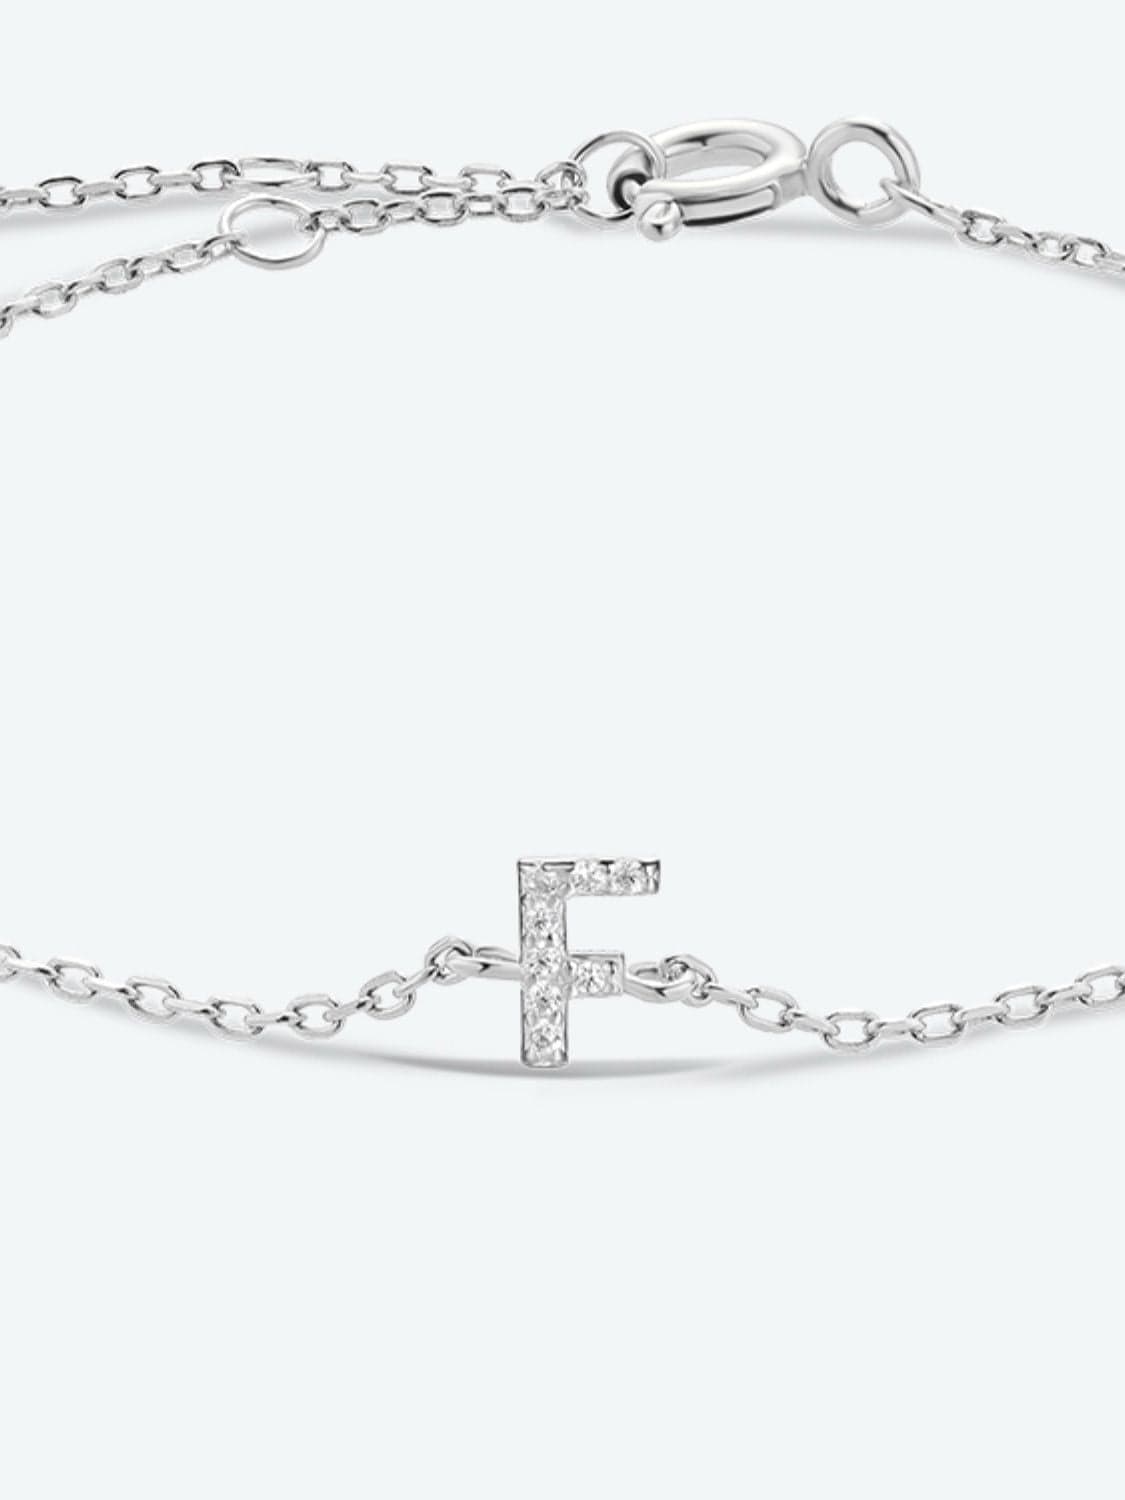 A To F Zircon 925 Sterling Silver Bracelet - CLASSY CLOSET BOUTIQUEA To F Zircon 925 Sterling Silver Braceletjewelry101300165476303101300165476303F-SilverOne Size